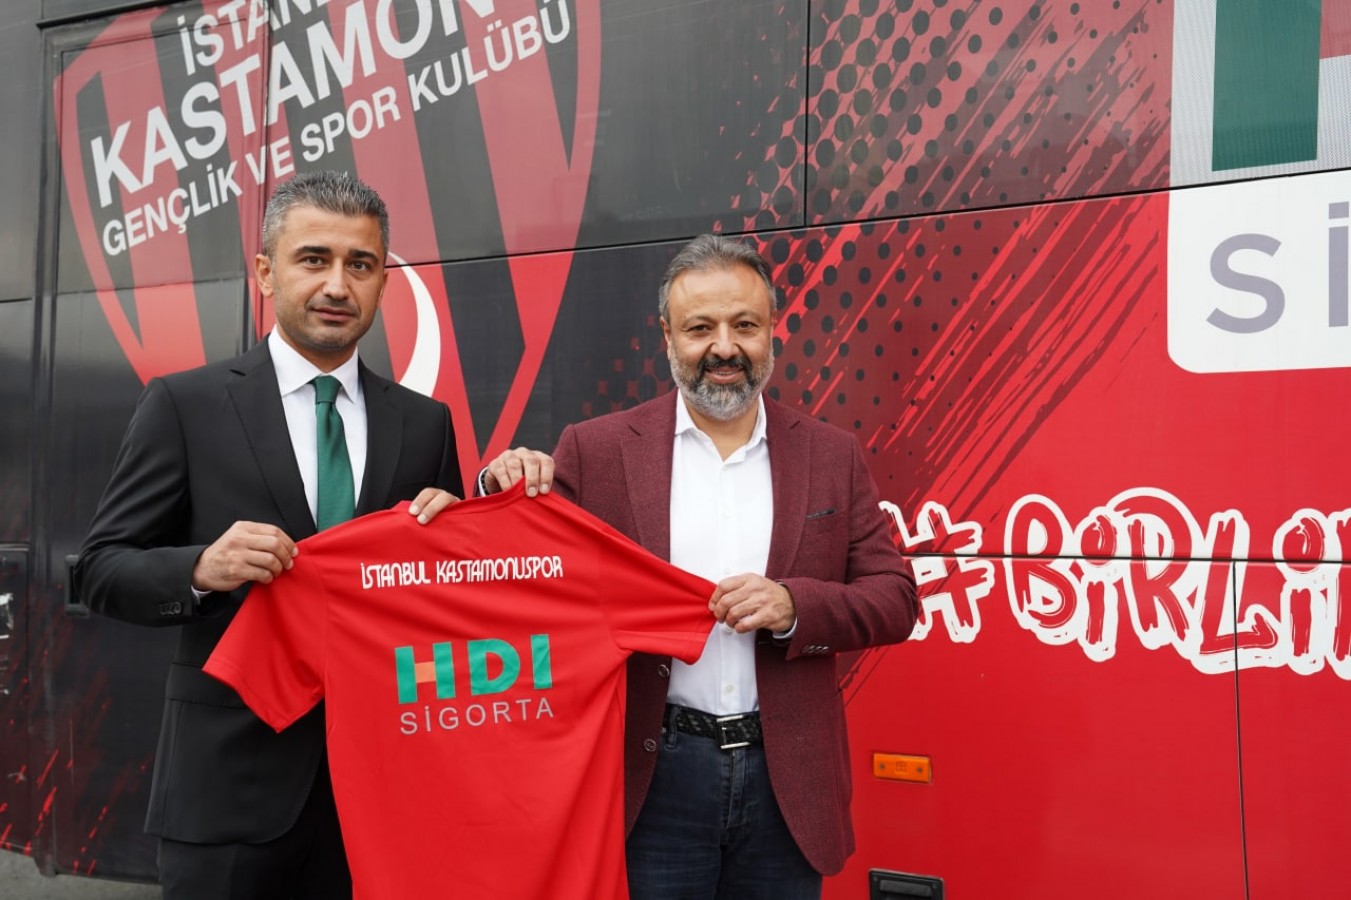 İstanbul KSK, HDI Sigorta ile anlaştı;